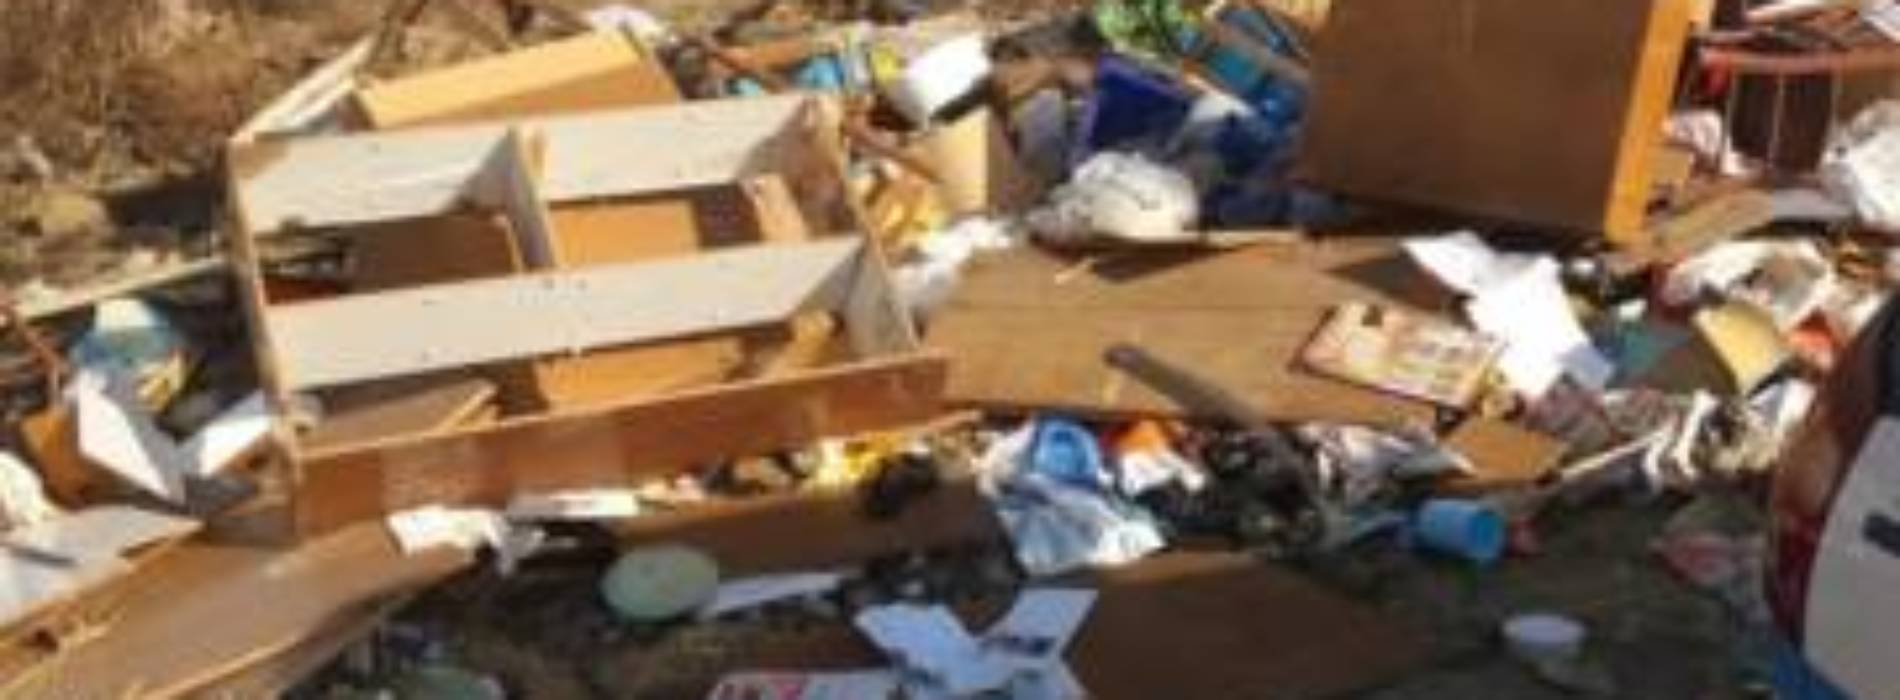 Tessera e libretto postale trovati tra i rifiuti, discariche abusive elevate 38 sanzioni amministrative